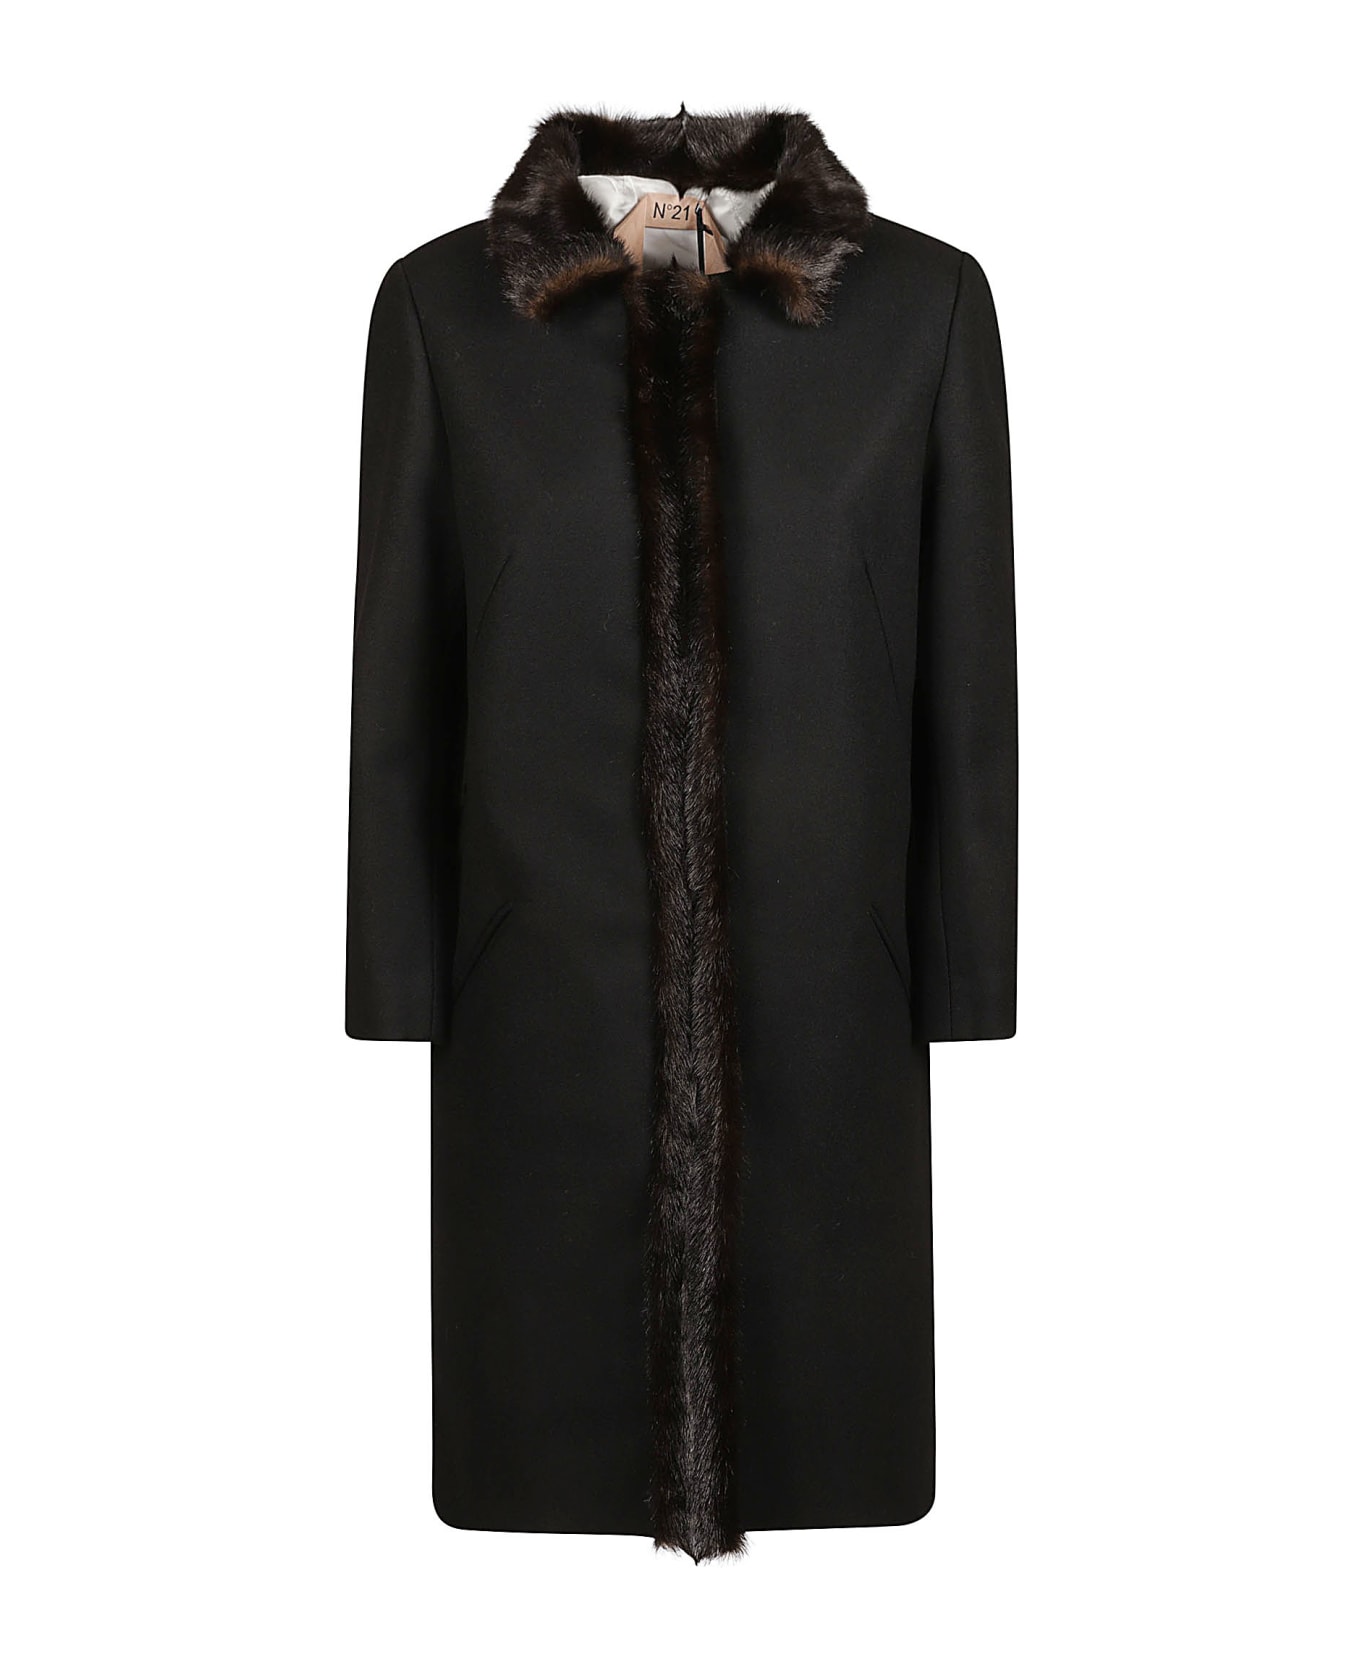 N.21 Fur Detailed Long Coat - Black コート